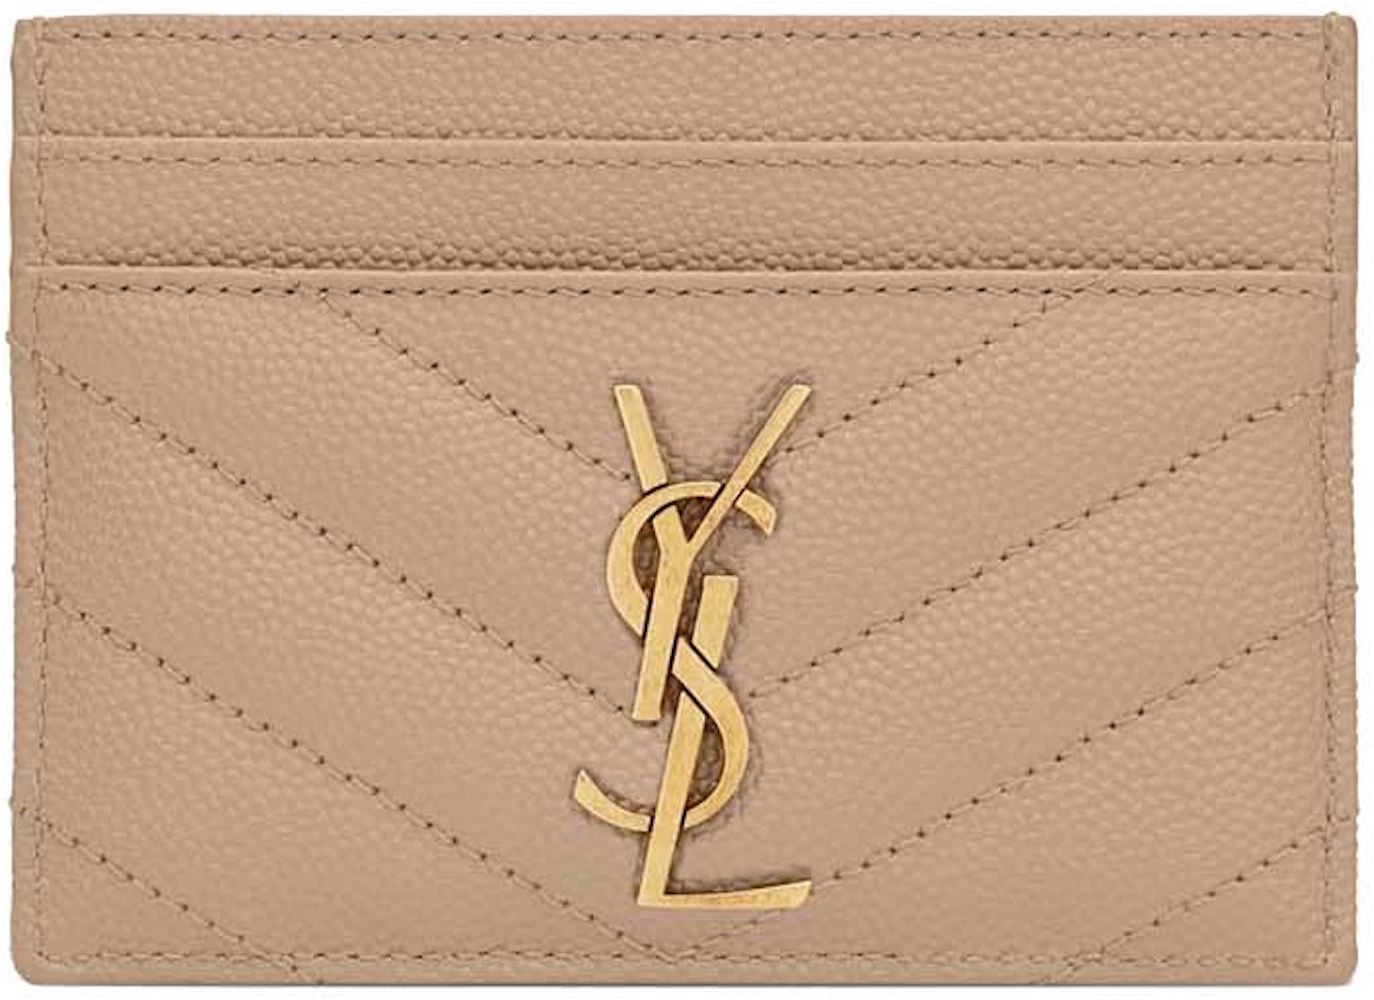 CASSANDRE MATELASSÉ chain wallet in grain de poudre embossed leather, Saint Laurent